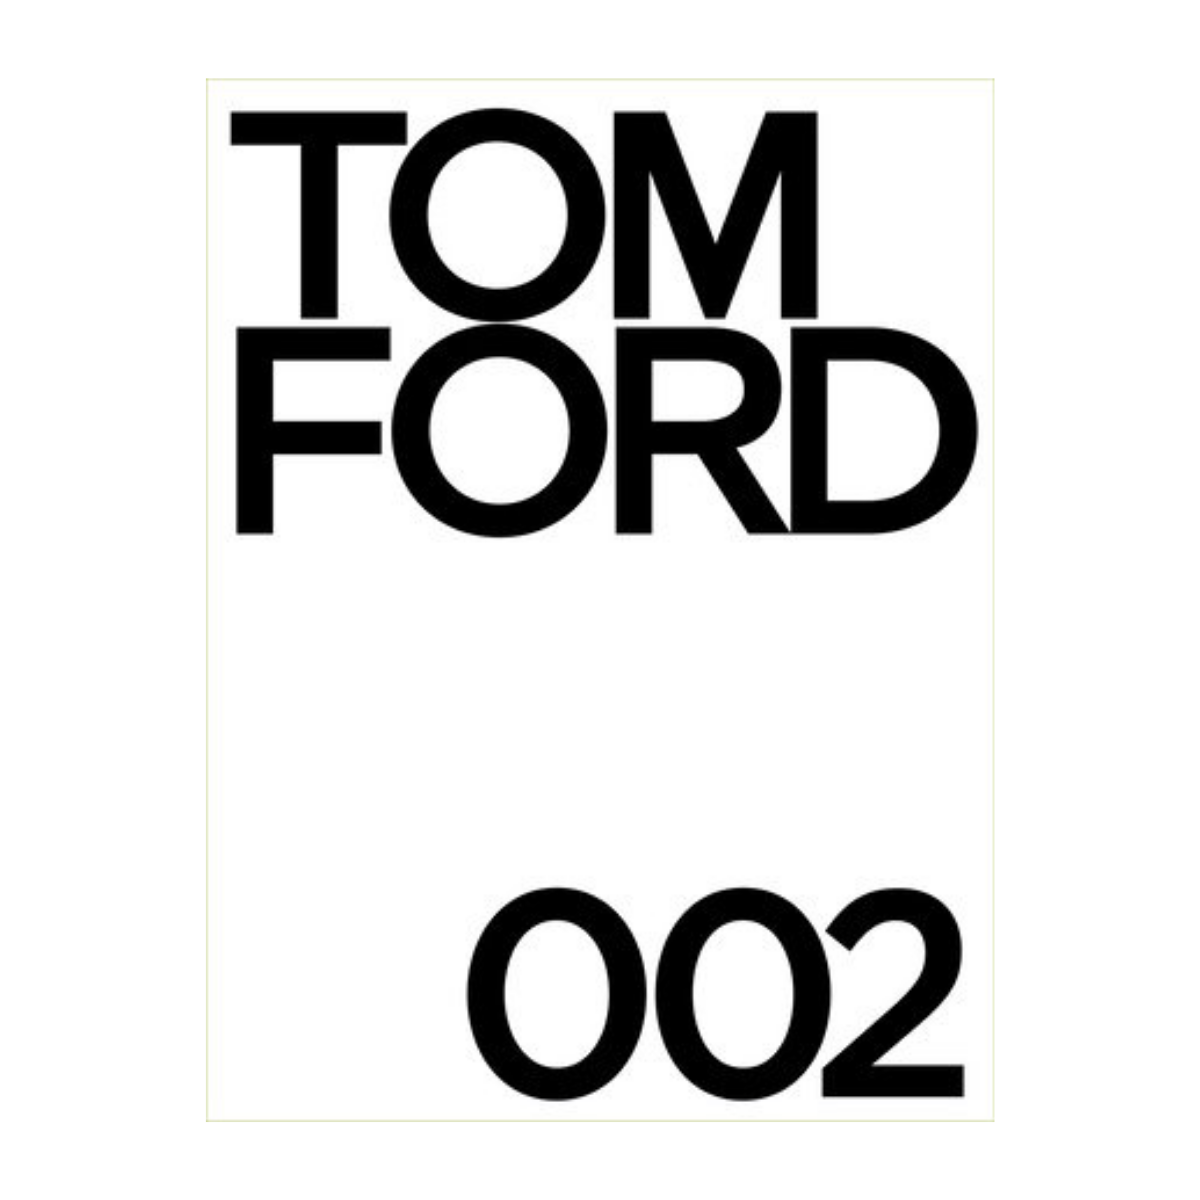 "Tom Ford 002"